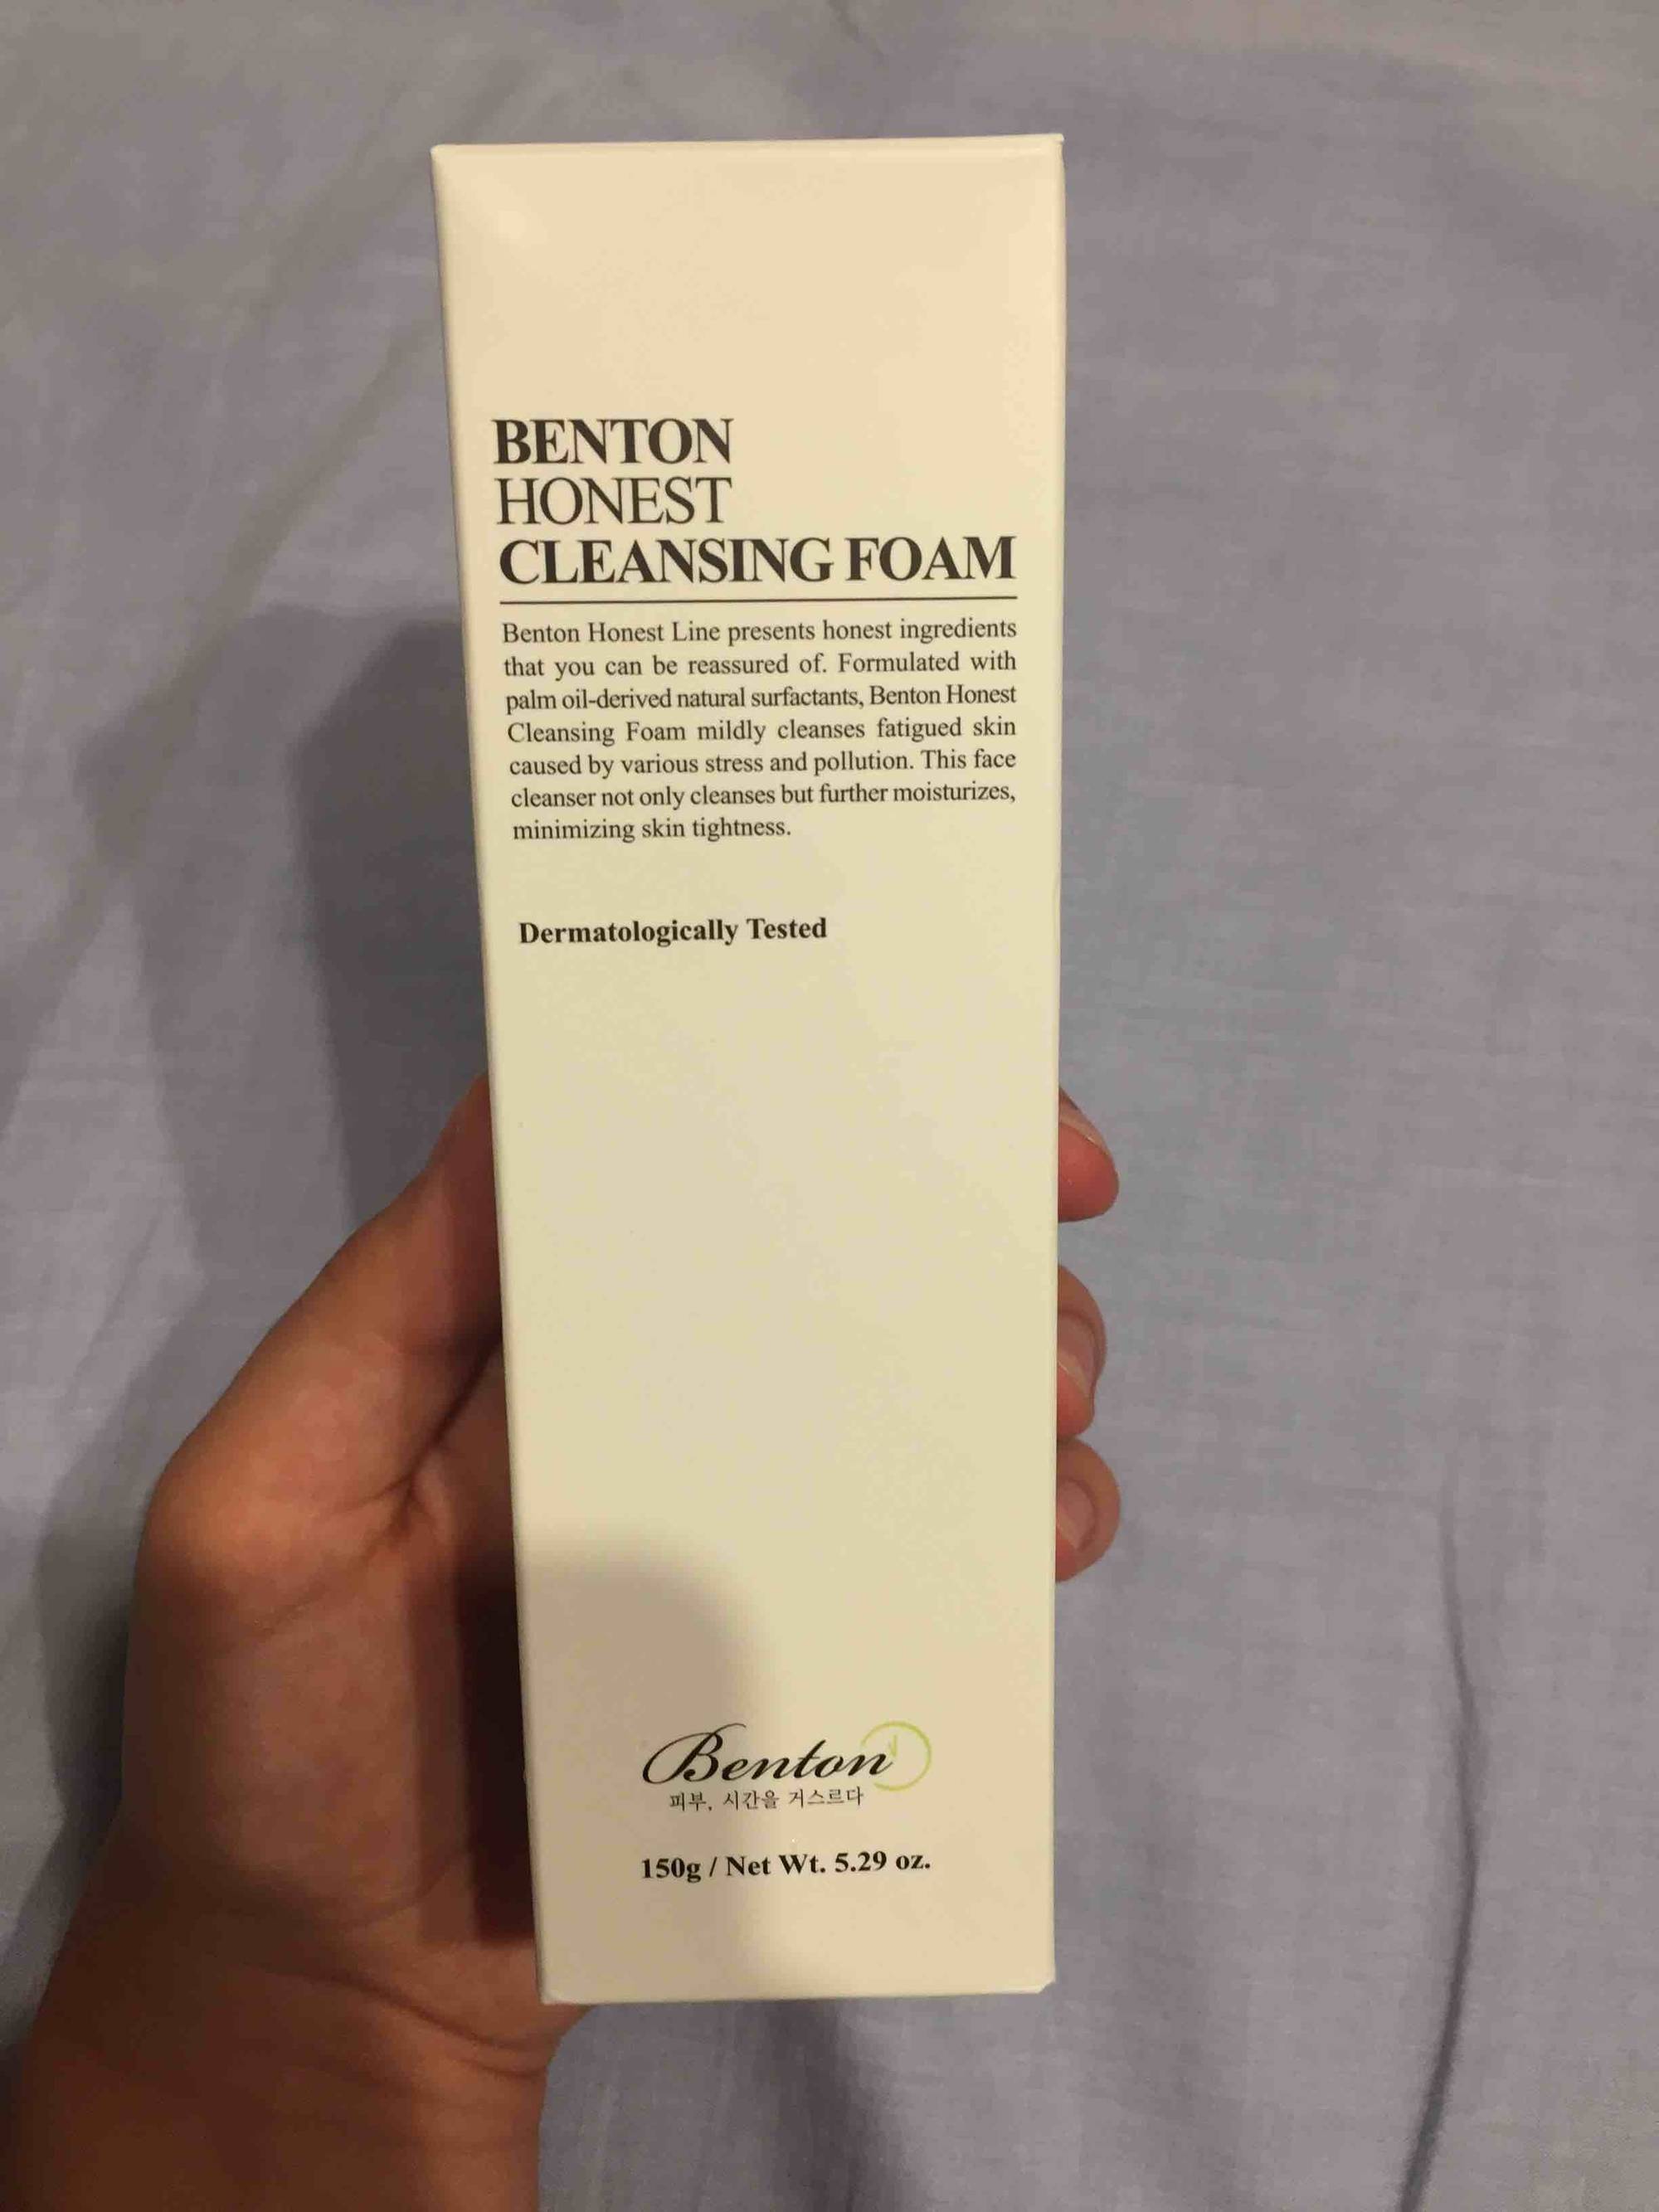 BENTON - Honest - Cleansing foam